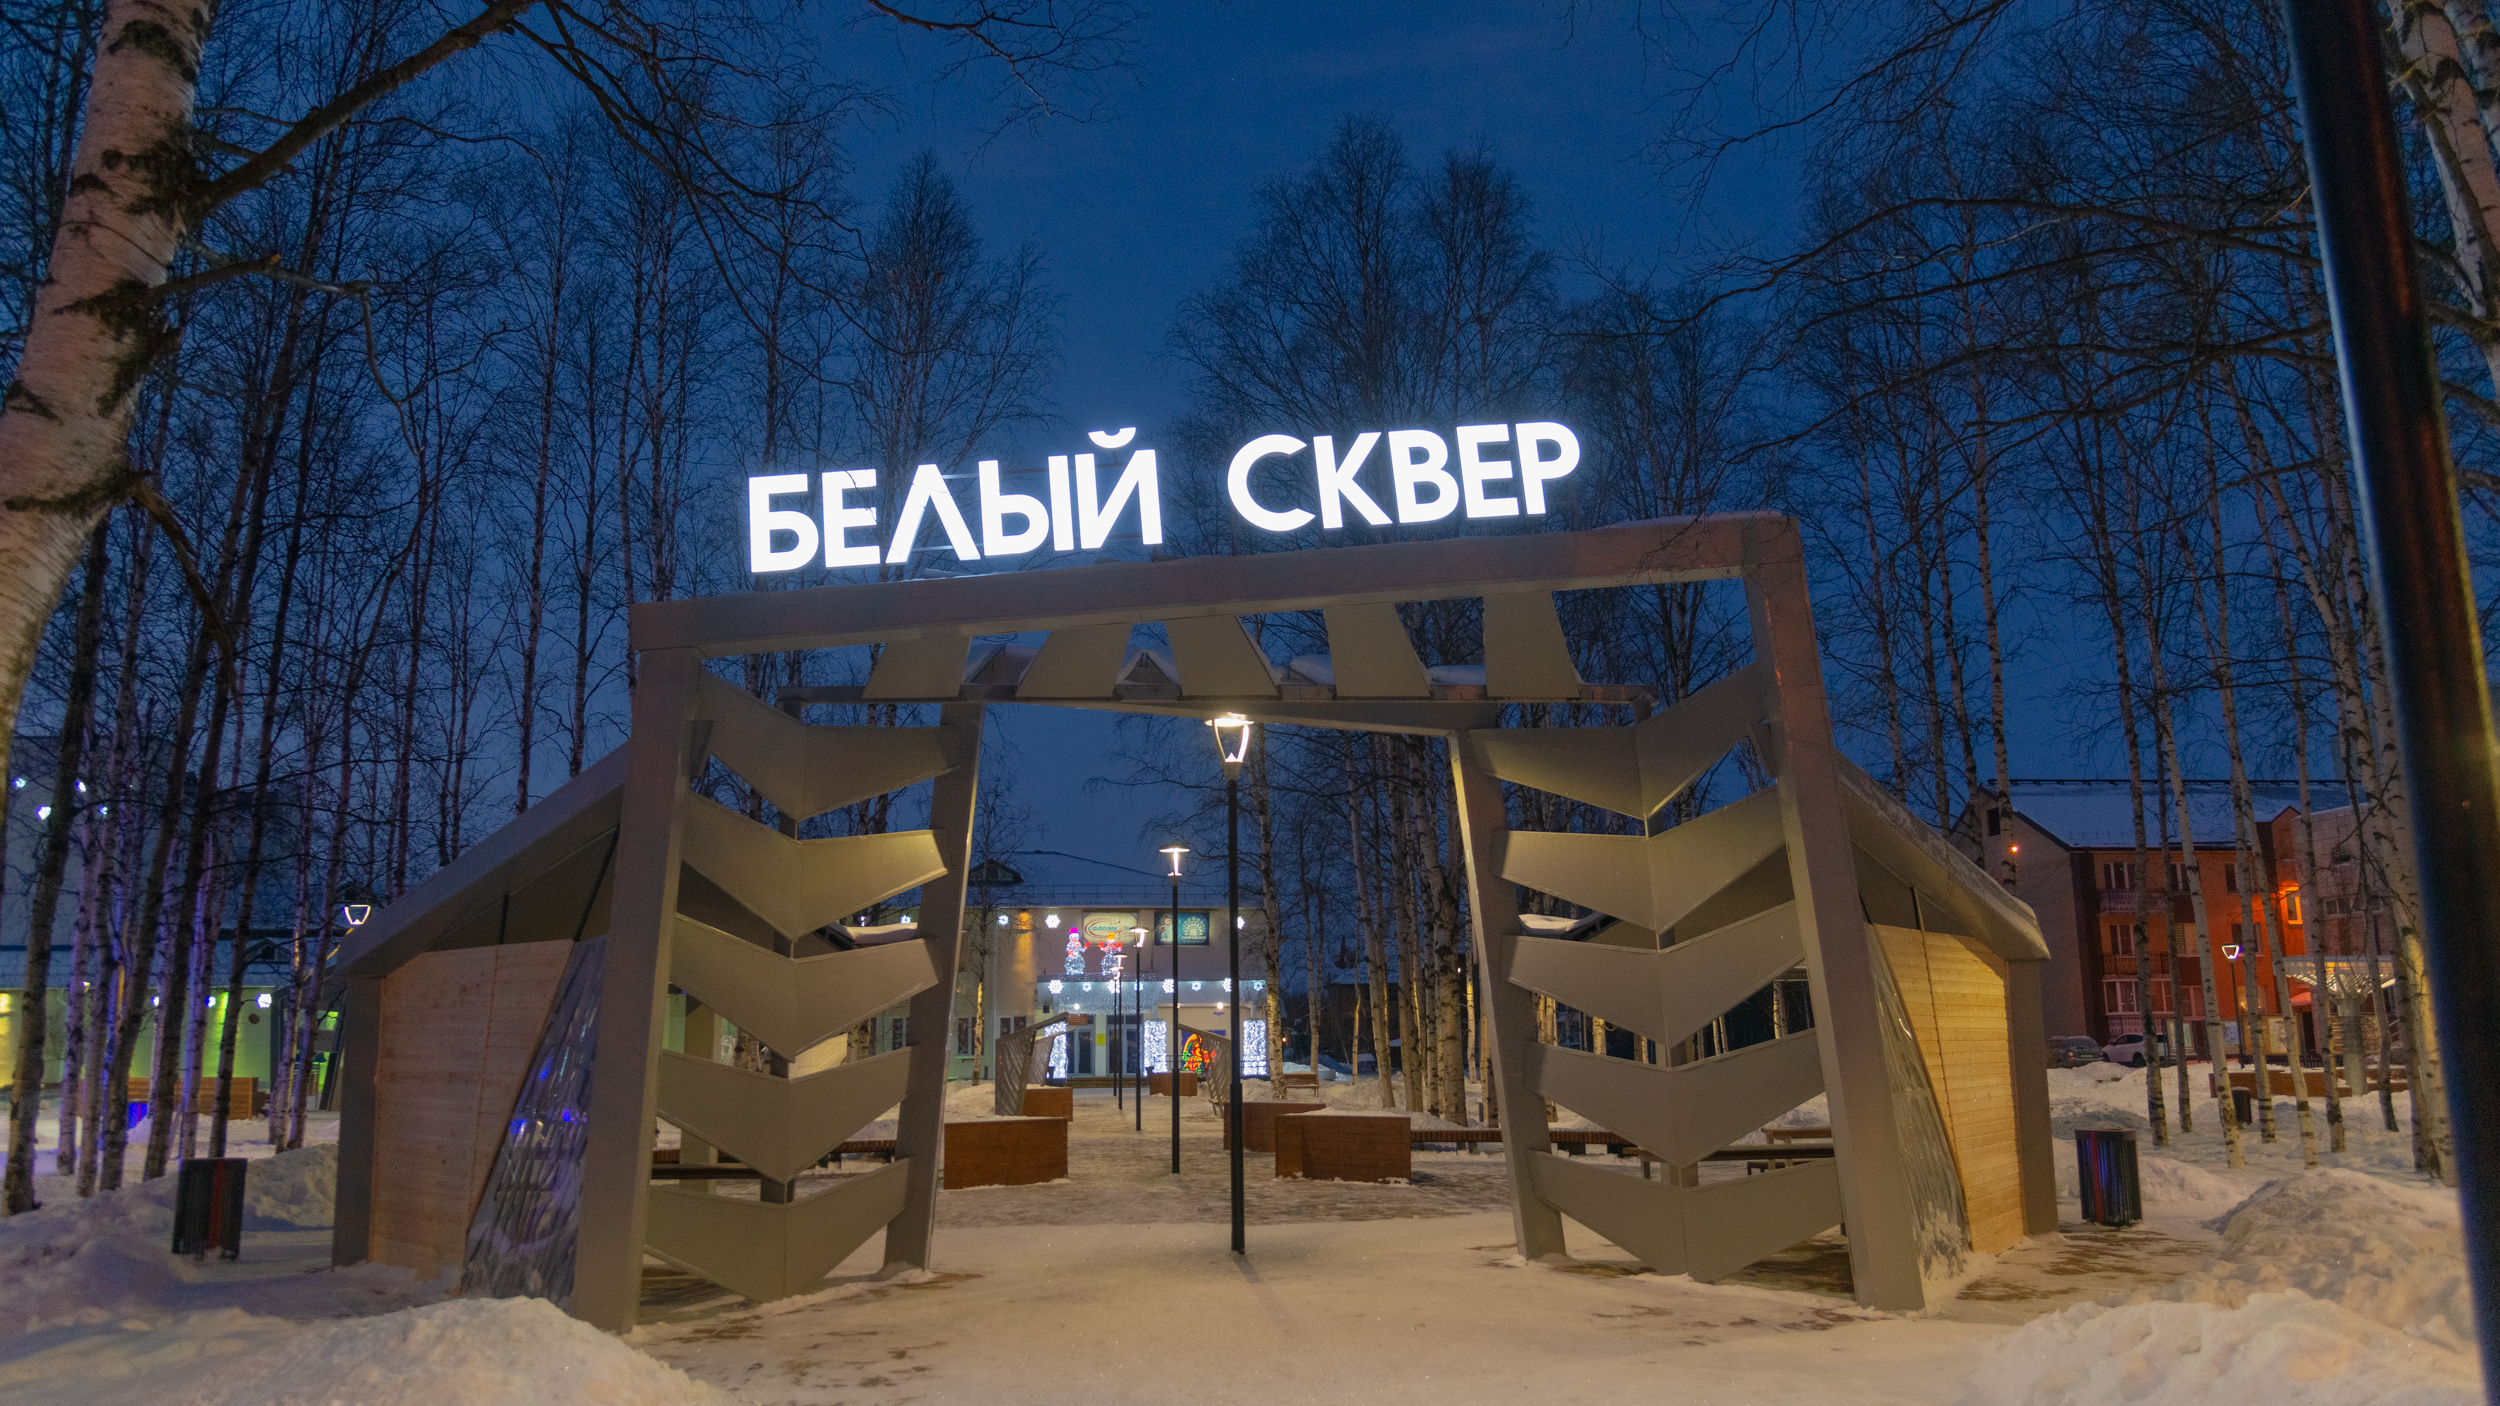 Единственный в Архангельске ледовый городок вдруг снесли: остается разглядывать скульптуры на фото